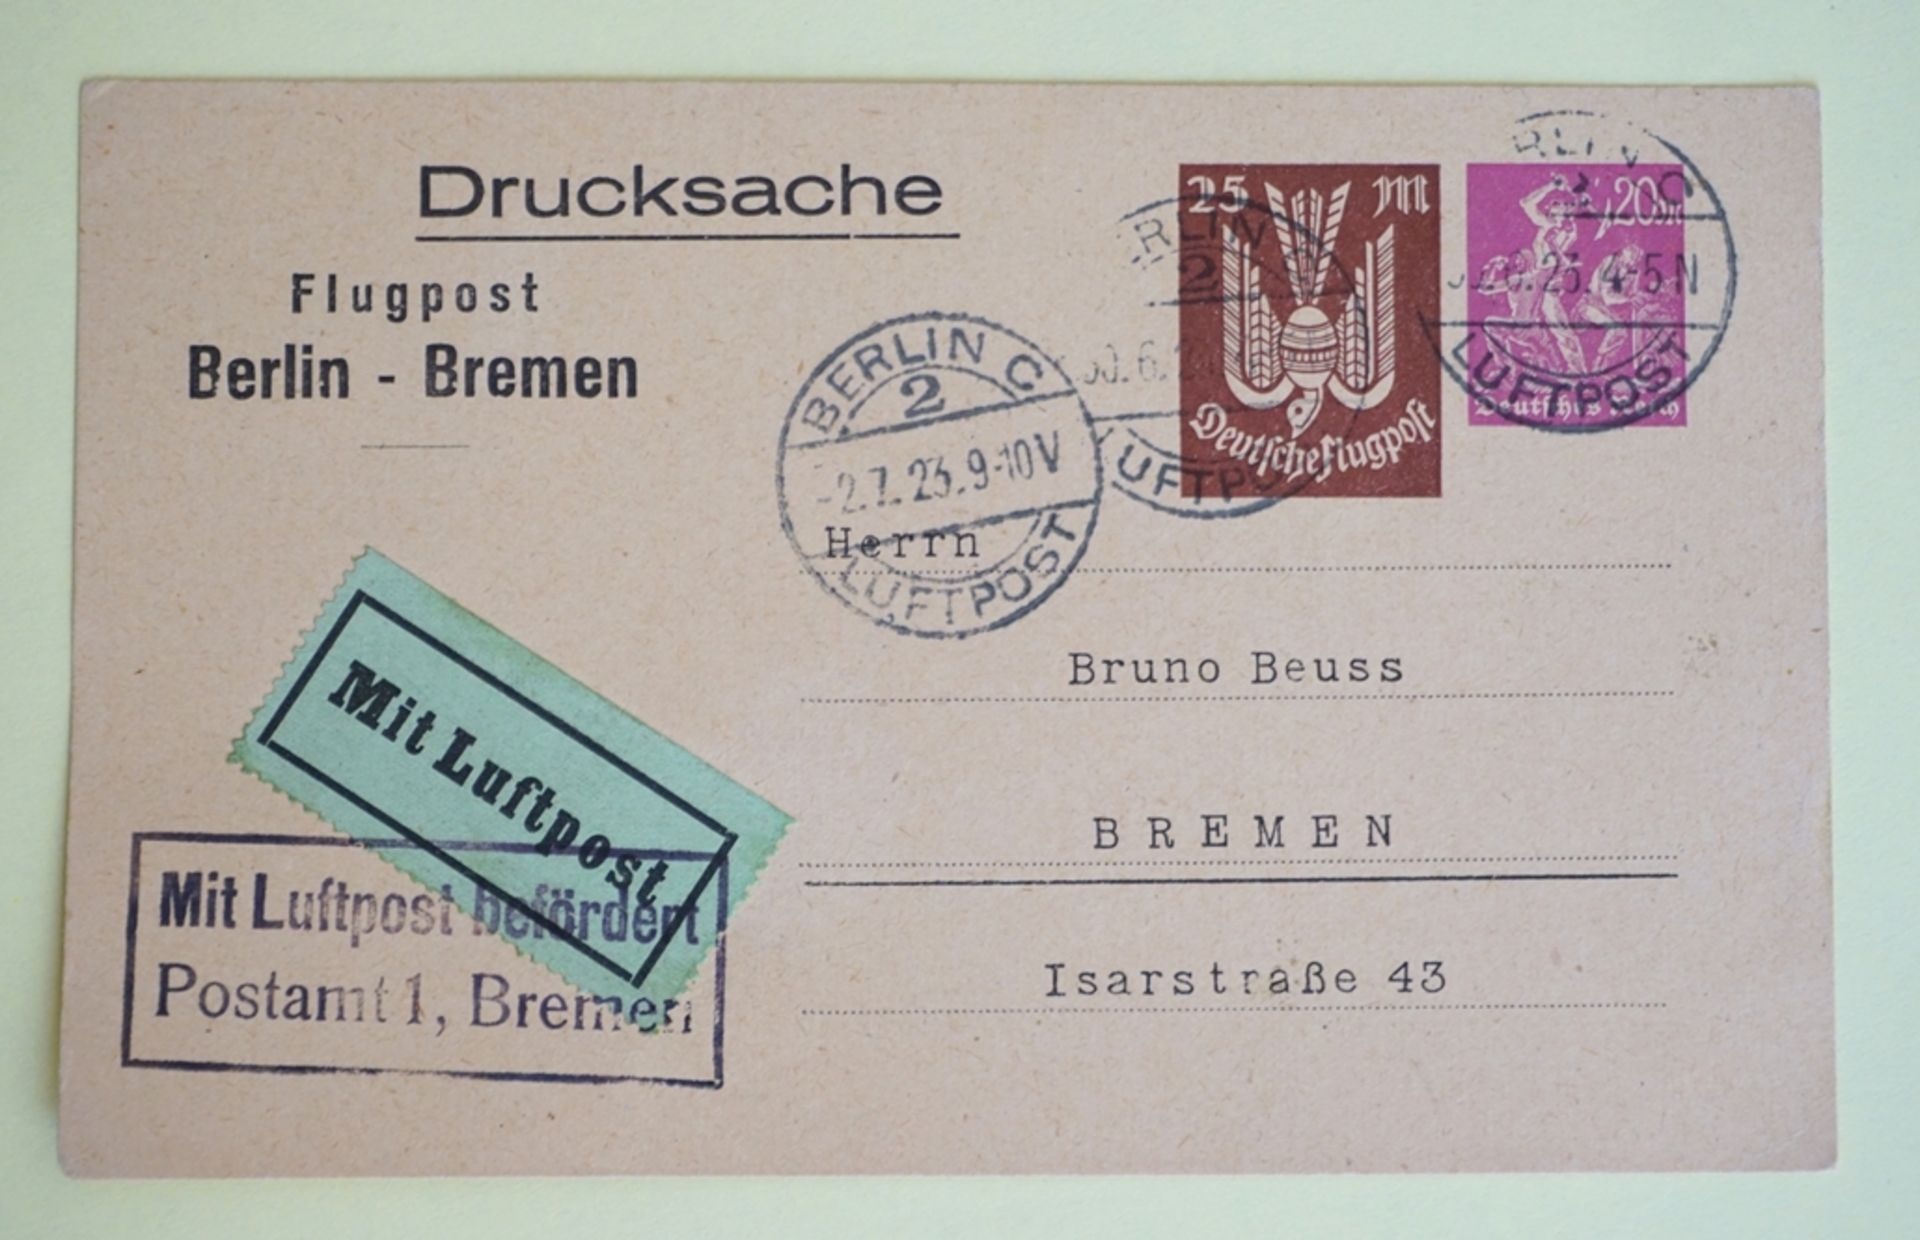 Drucksache, Postkarte, mit aufgedruckten Marken, Flugpostmarke